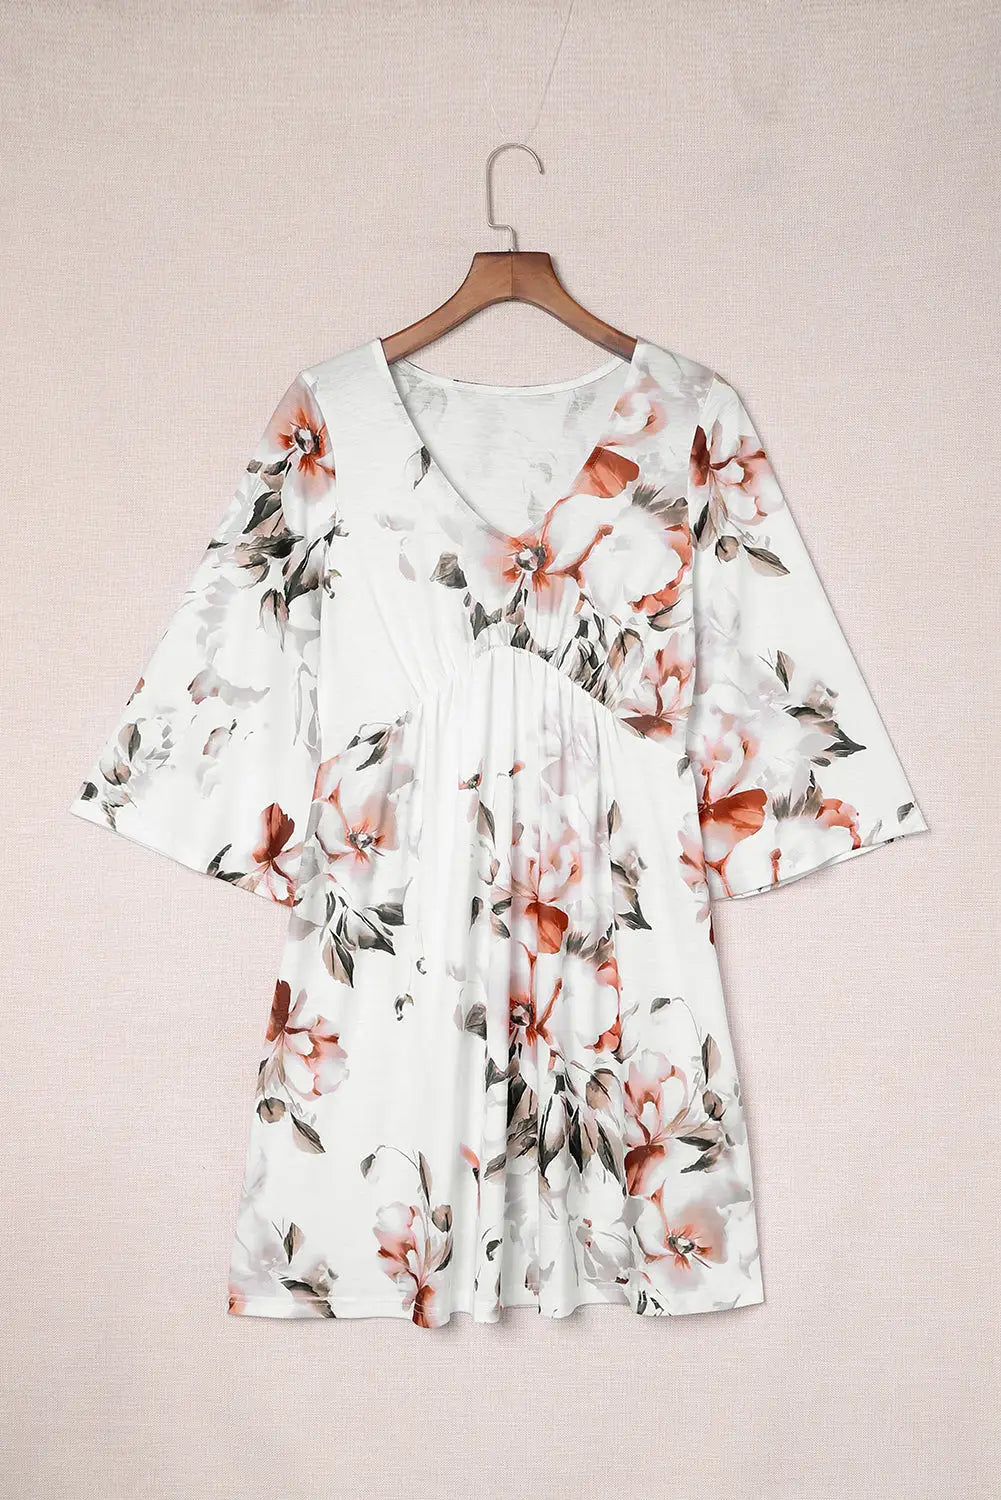 White v neck 3/4 sleeve floral dress - dresses